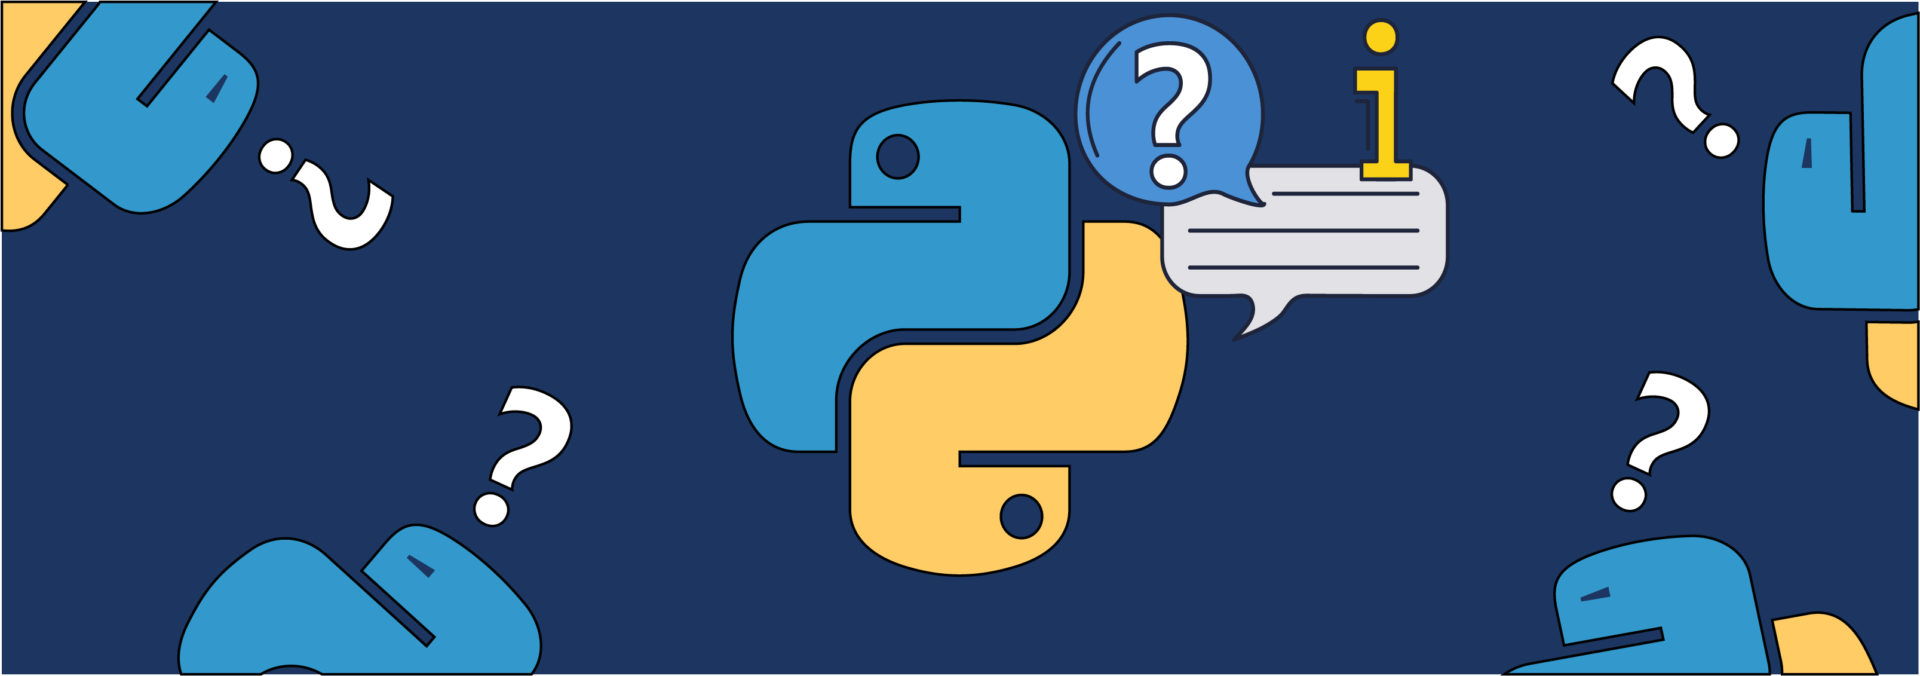 Короткие ответы на популярные вопросы о Python